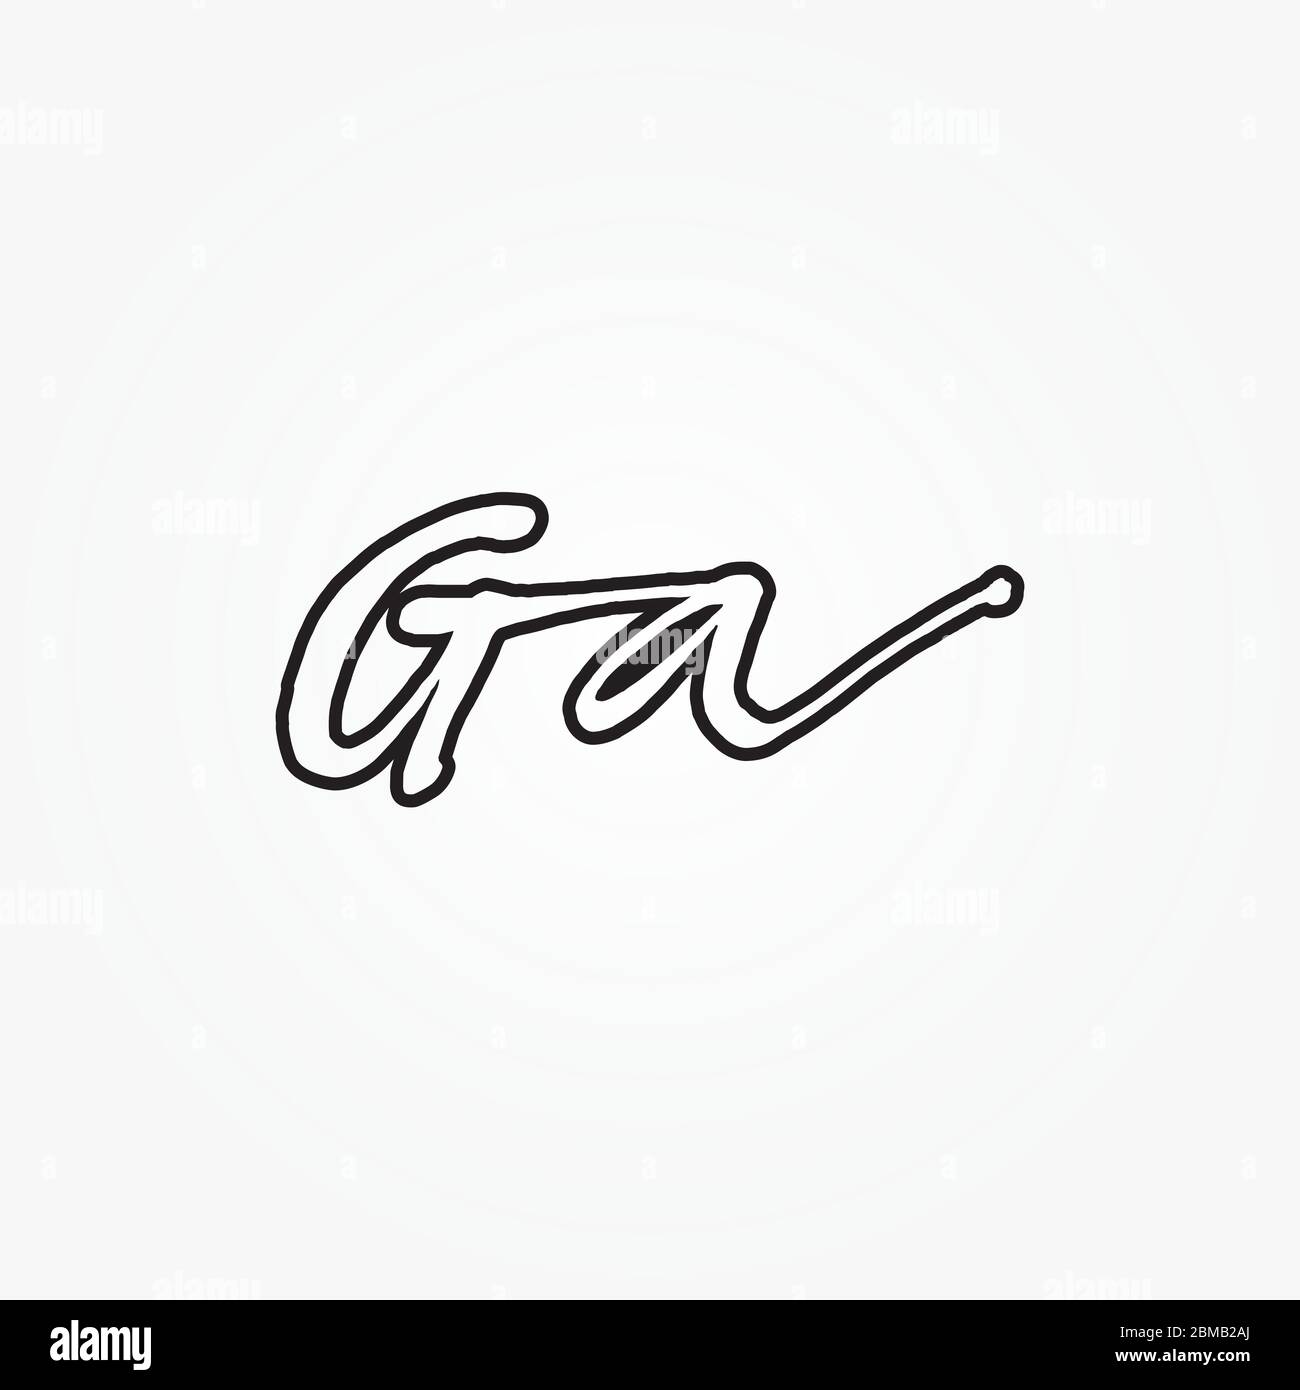 G A script letter logo design vector Stock Vector